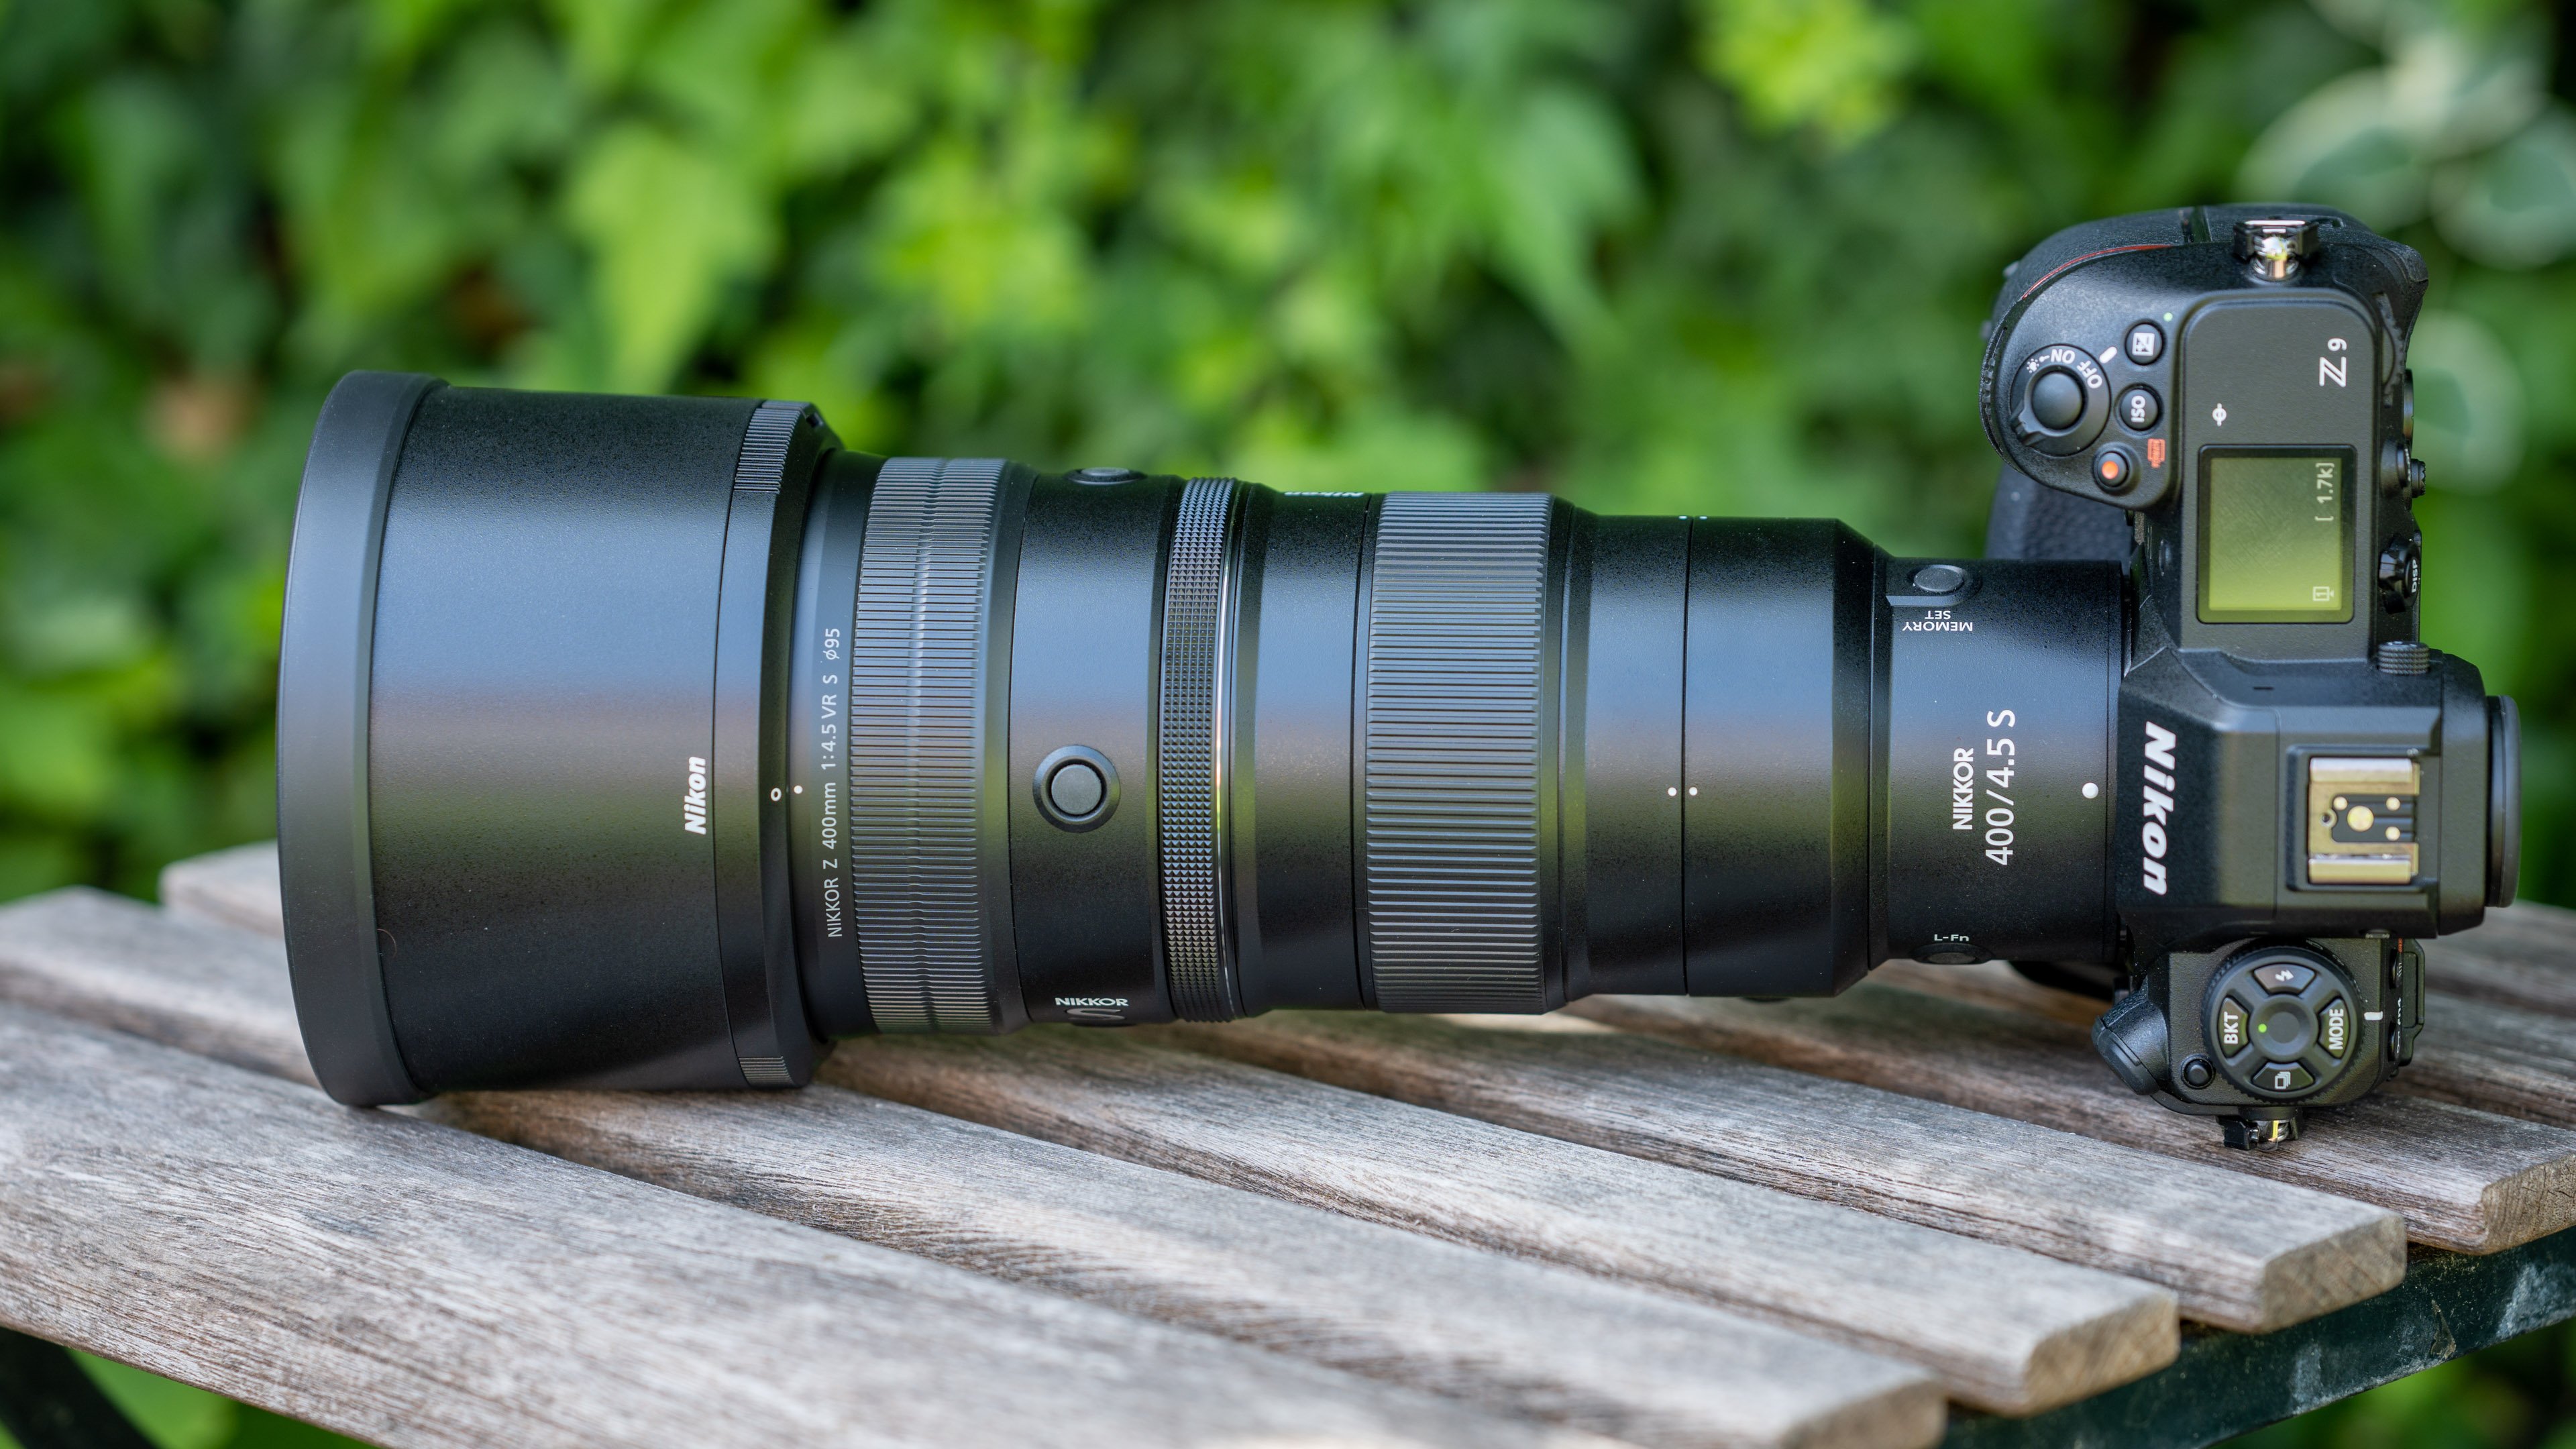 Nikon Z7 II Camera and Nikon Z 100-400mm F4.5-5.6 VR Lens